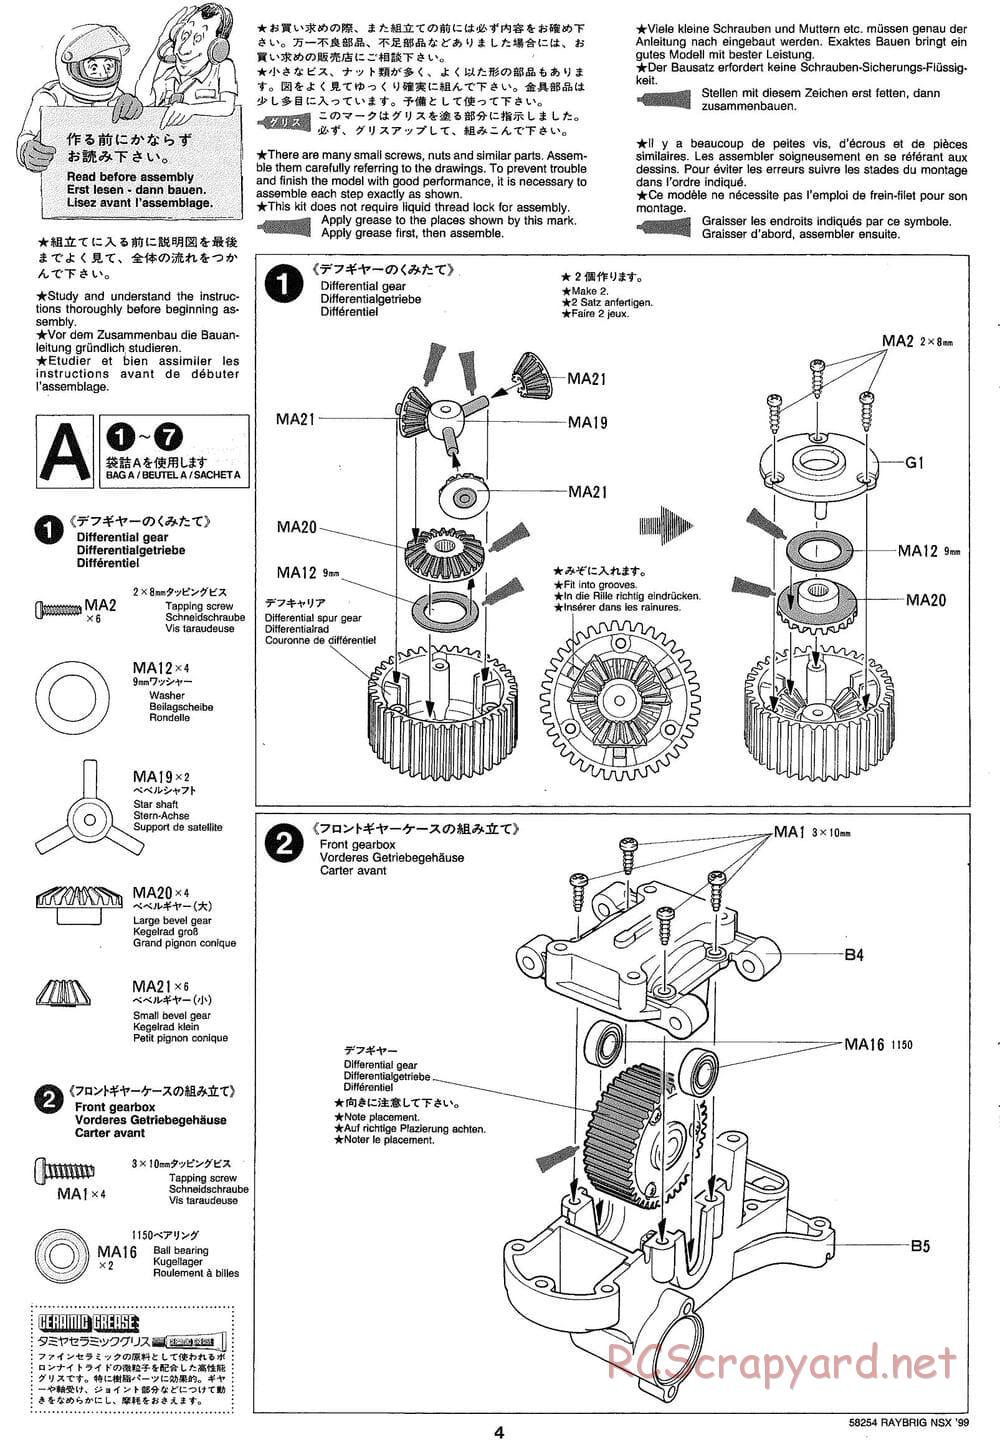 Tamiya - Raybrig NSX 99 - TA-03R Chassis - Manual - Page 4